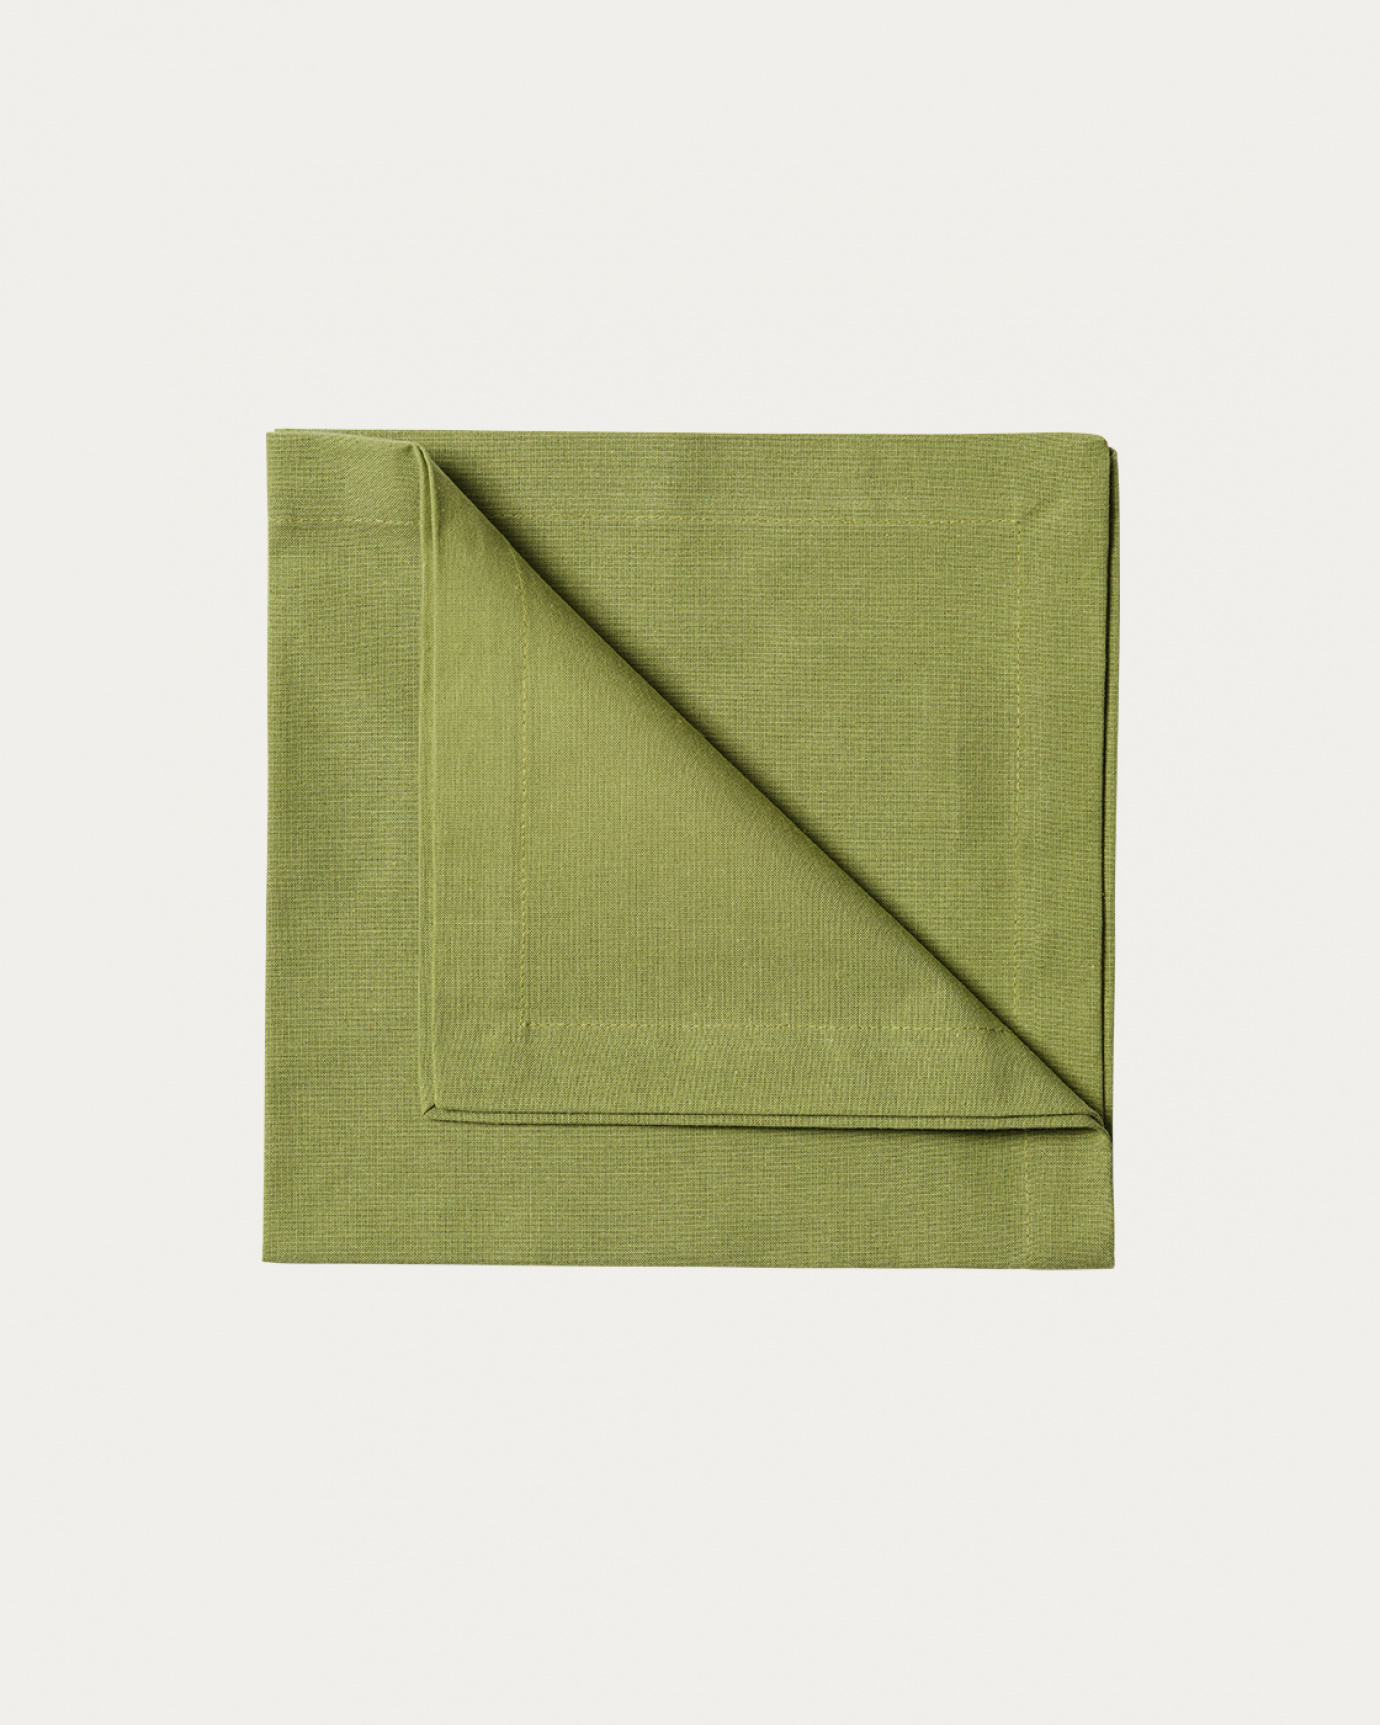 Immagine prodotto verde muschio ROBERT tovagliolo in morbido cotone di LINUM DESIGN. Dimensioni 45x45 cm e venduto in 4-pezzi.